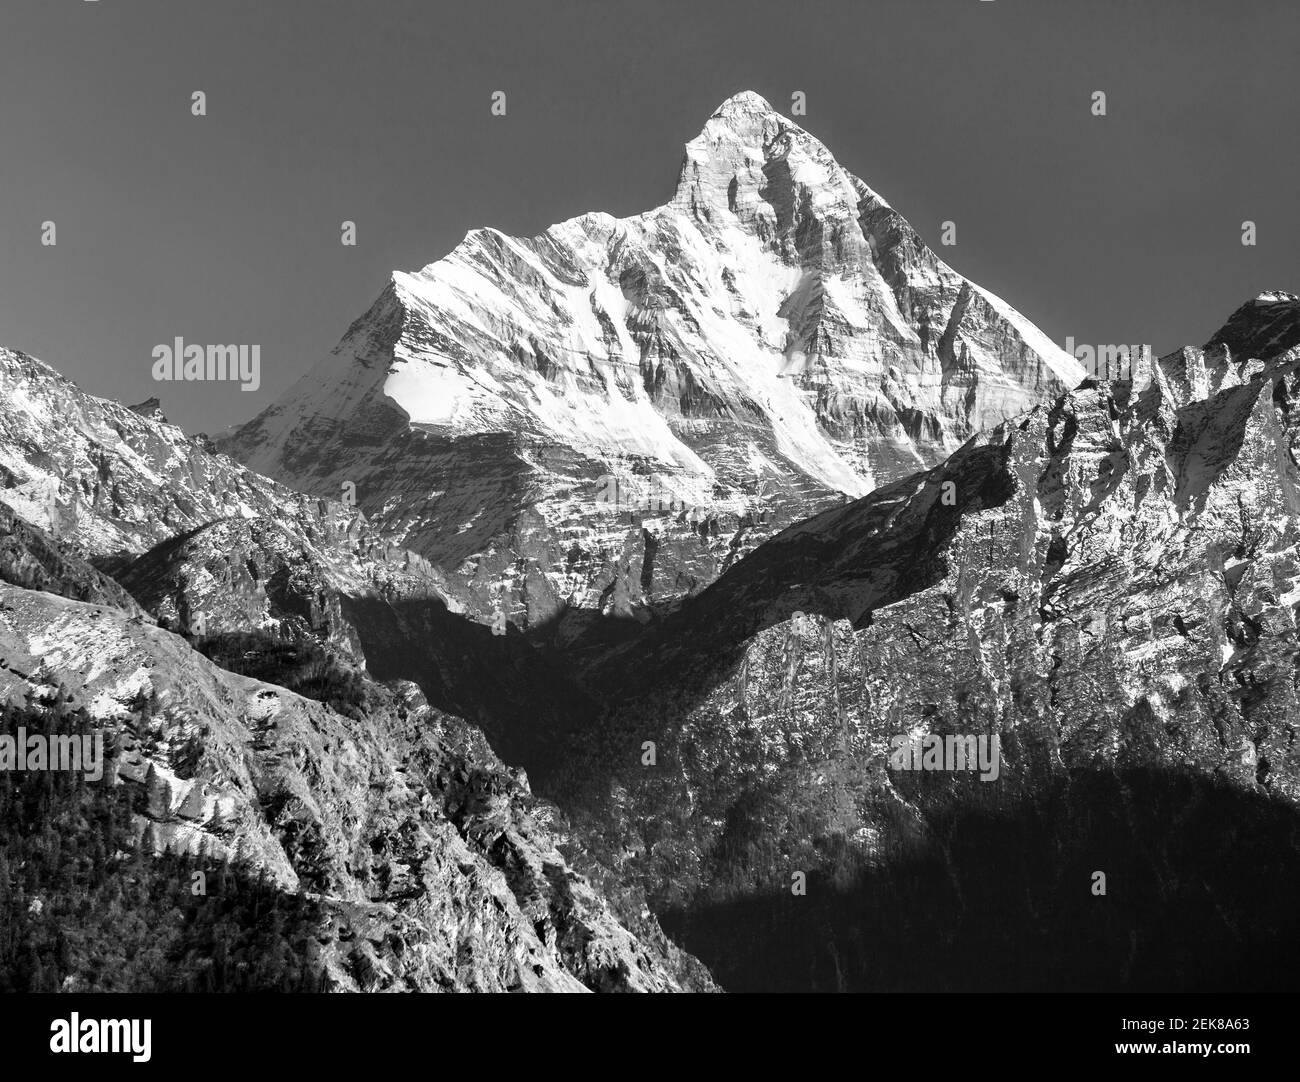 monte Nanda Devi, uno de los mejores montes del Himalaya indio, visto desde Joshimath Auli, Uttarakhand, India, vista en blanco y negro Foto de stock